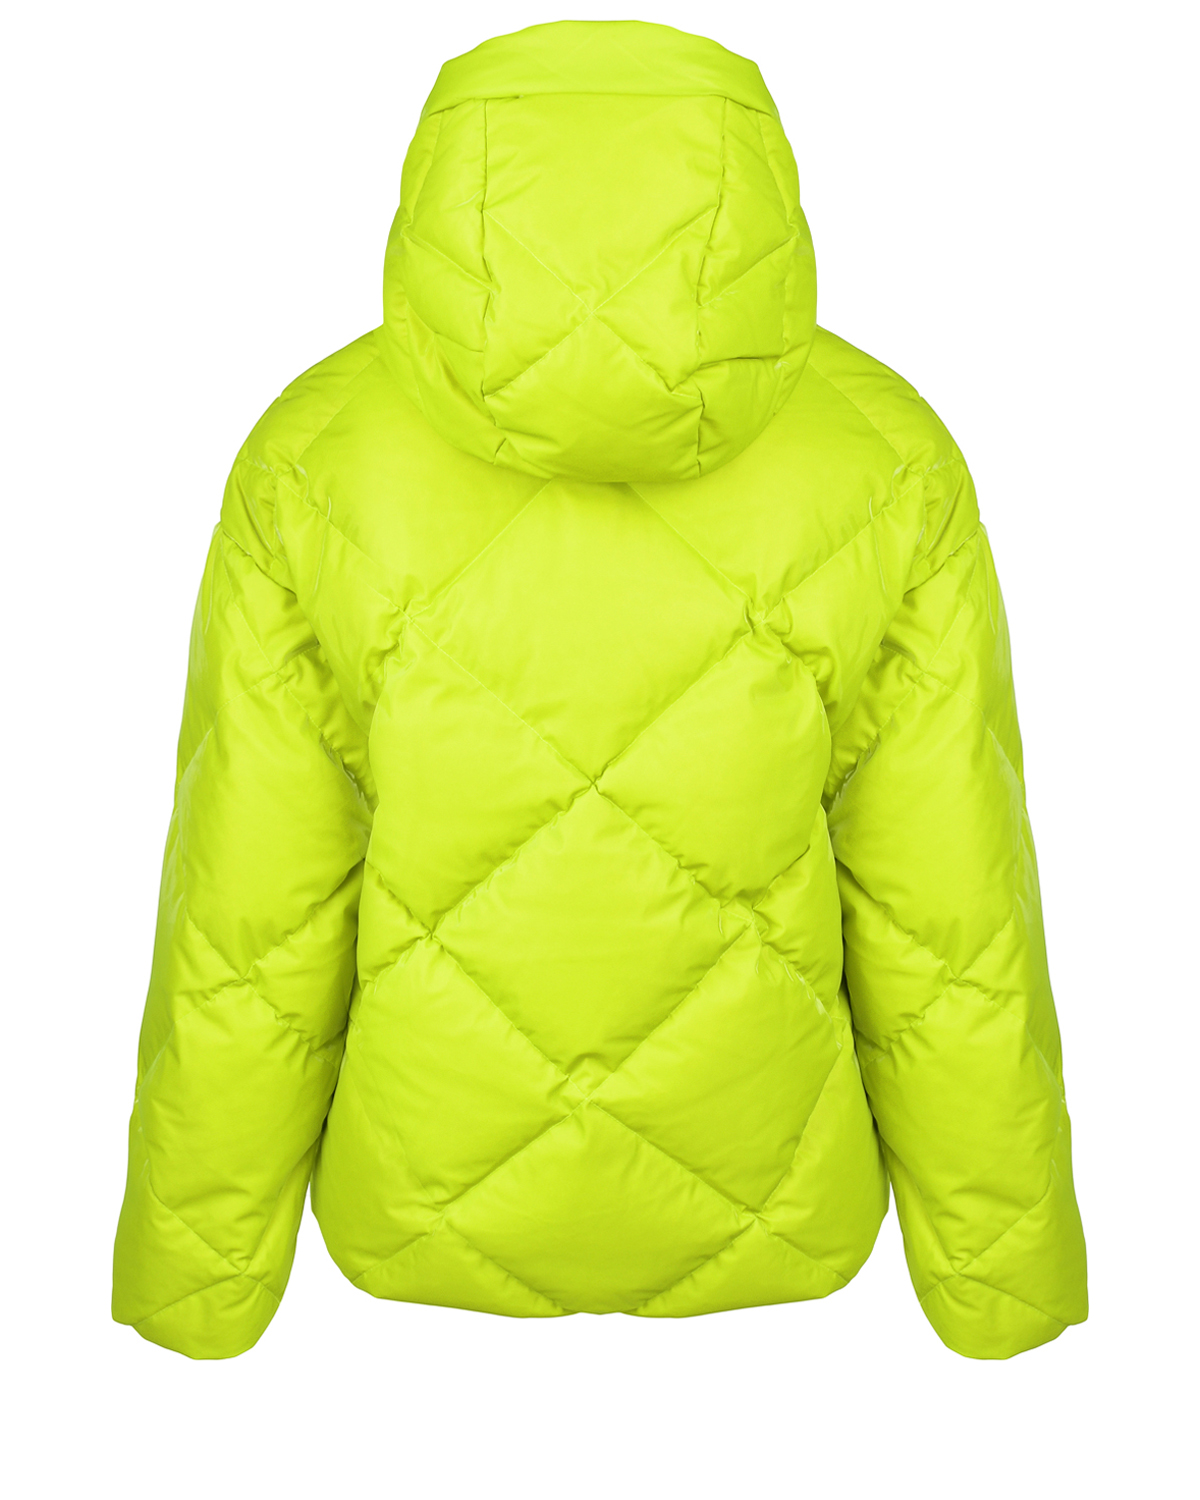 Салатовая куртка со стеганой отделкой Freedomday, размер 38, цвет салатовый - фото 2